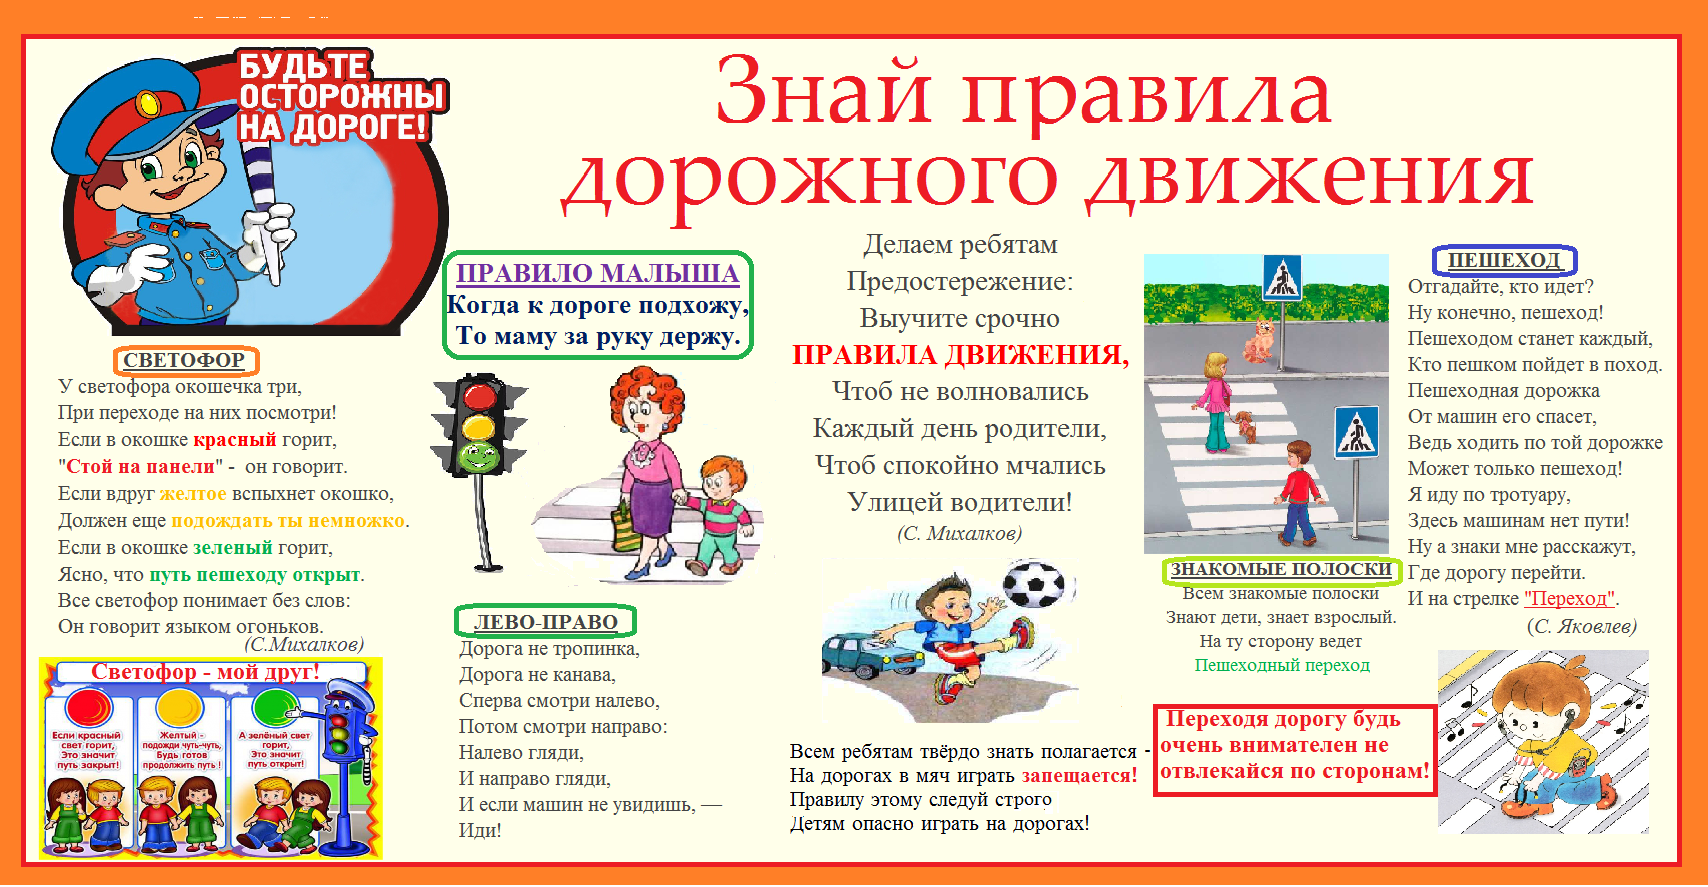 Пдд движение первых. Правила дорожного движения для детей. Плакат по правилам дорожного движения для школьников. Плакат по правилам дорожного движения для детей. ПДД правила дорожного движения.